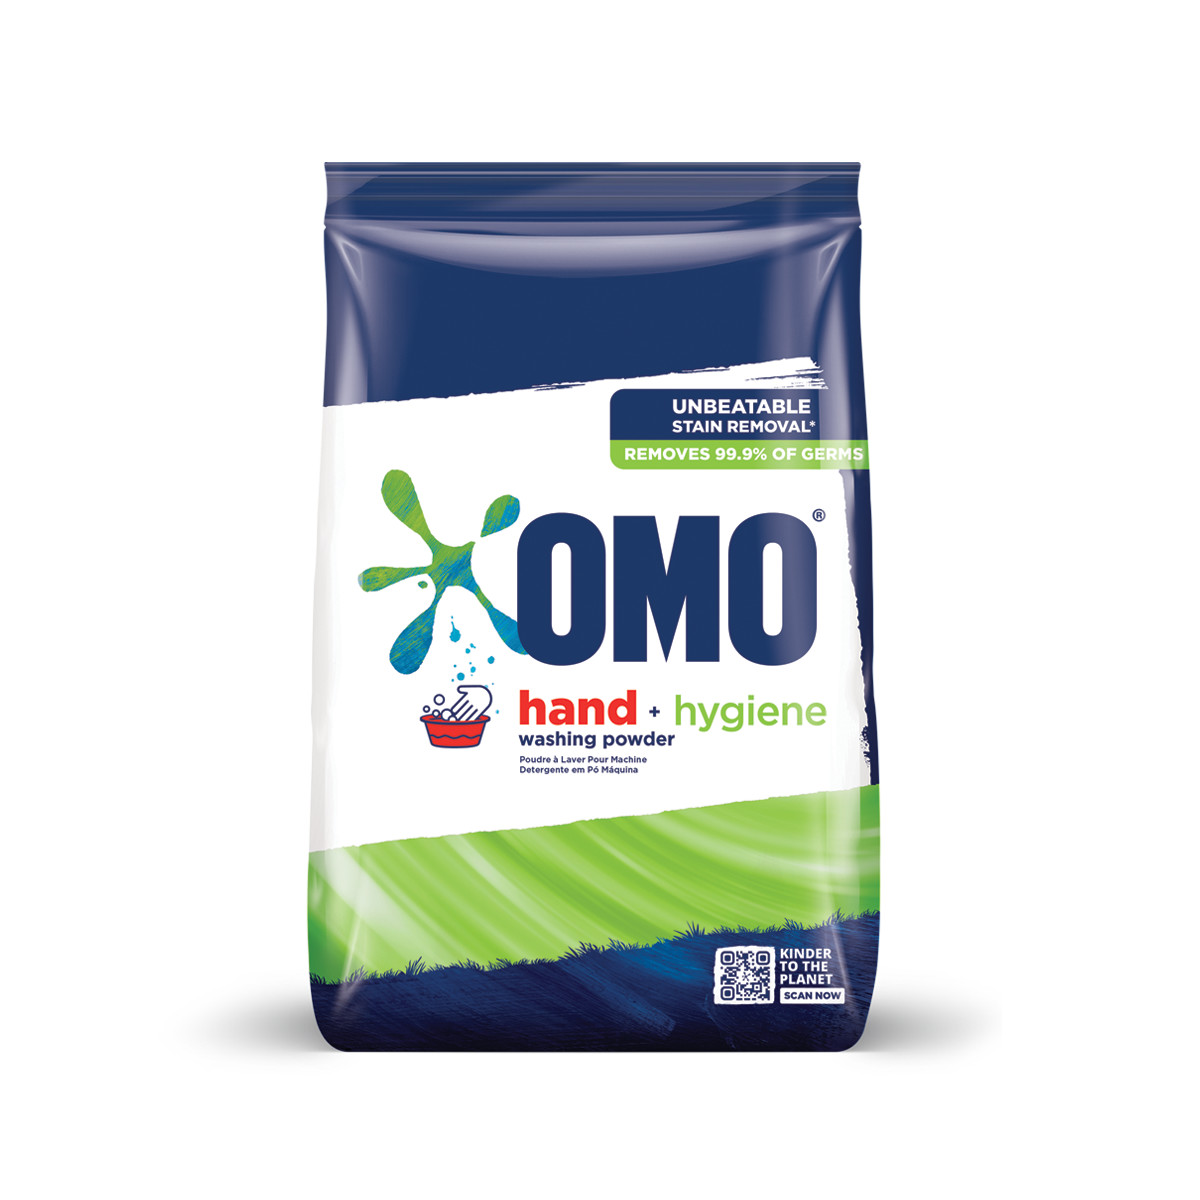 OMO + Hygiene hand washing powder